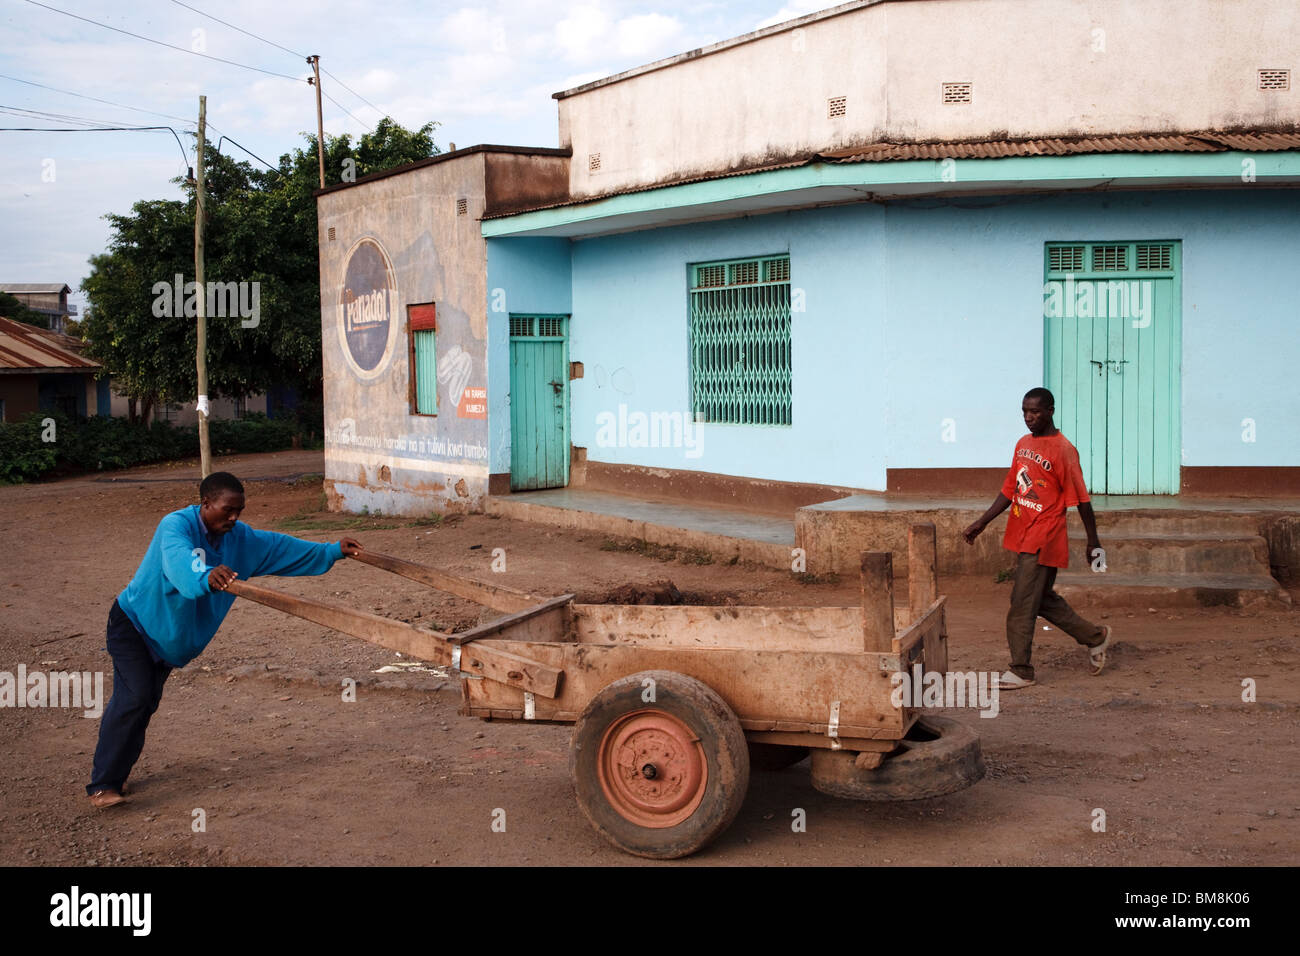 Street scene in Moshi, Tanzania Stock Photo